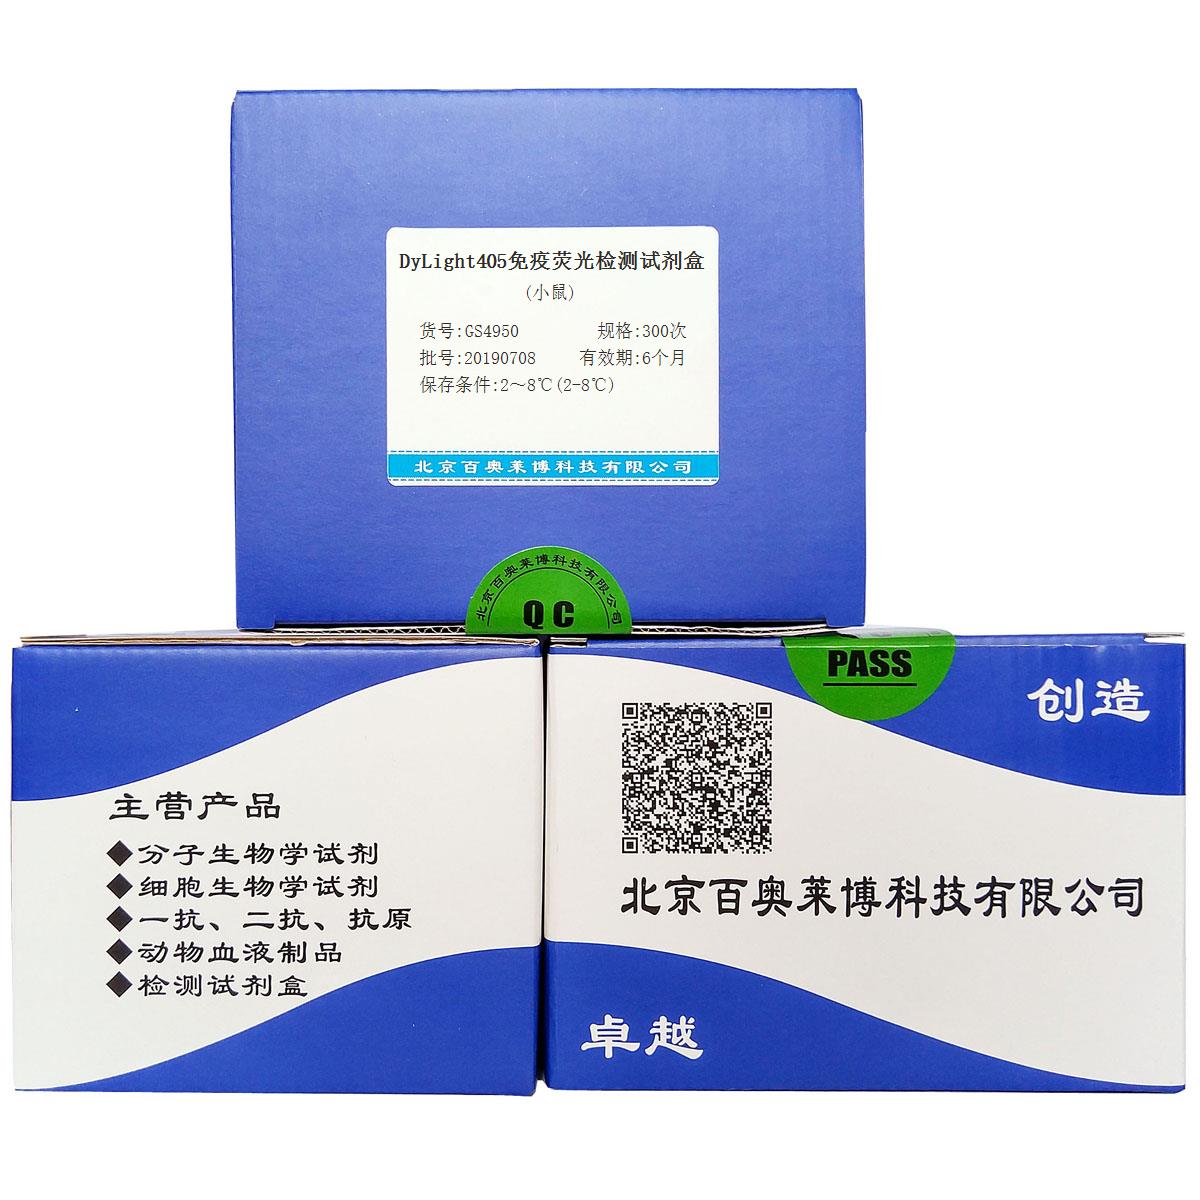 DyLight405免疫荧光检测试剂盒(小鼠)